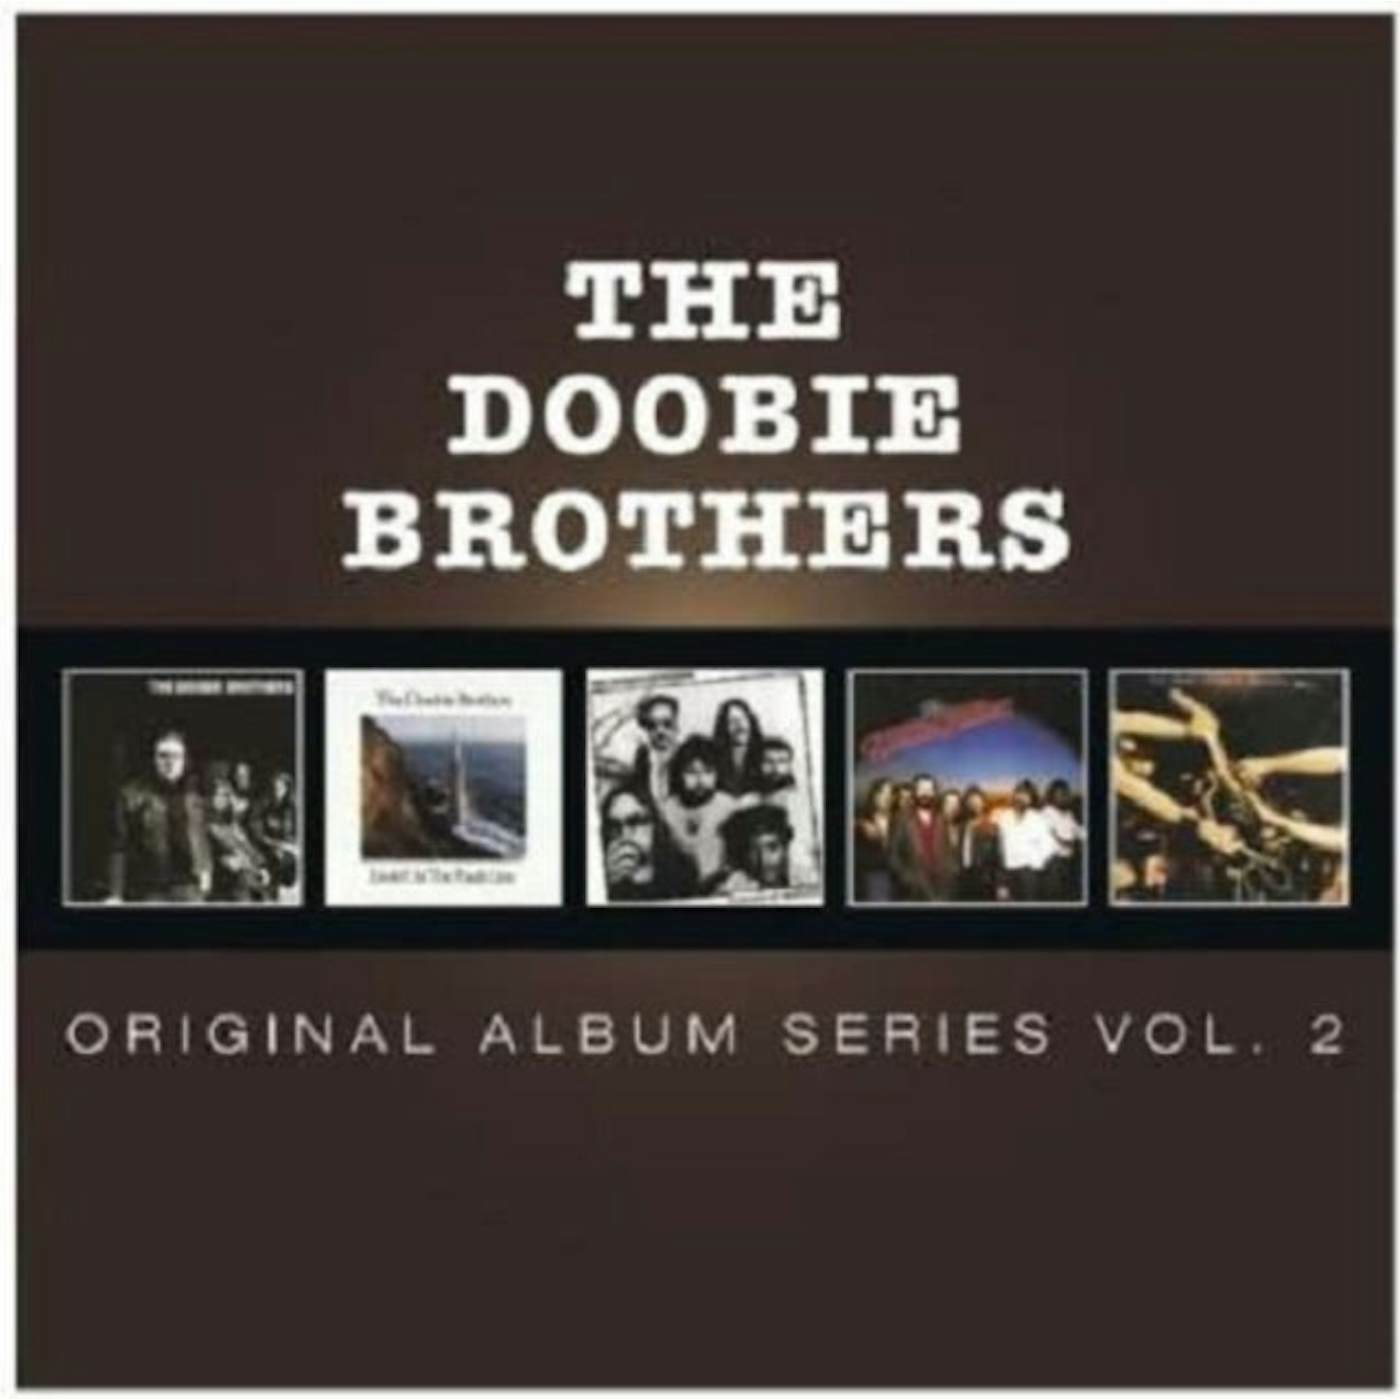 The Doobie Brothers CD - Original Album Series: Volume 2